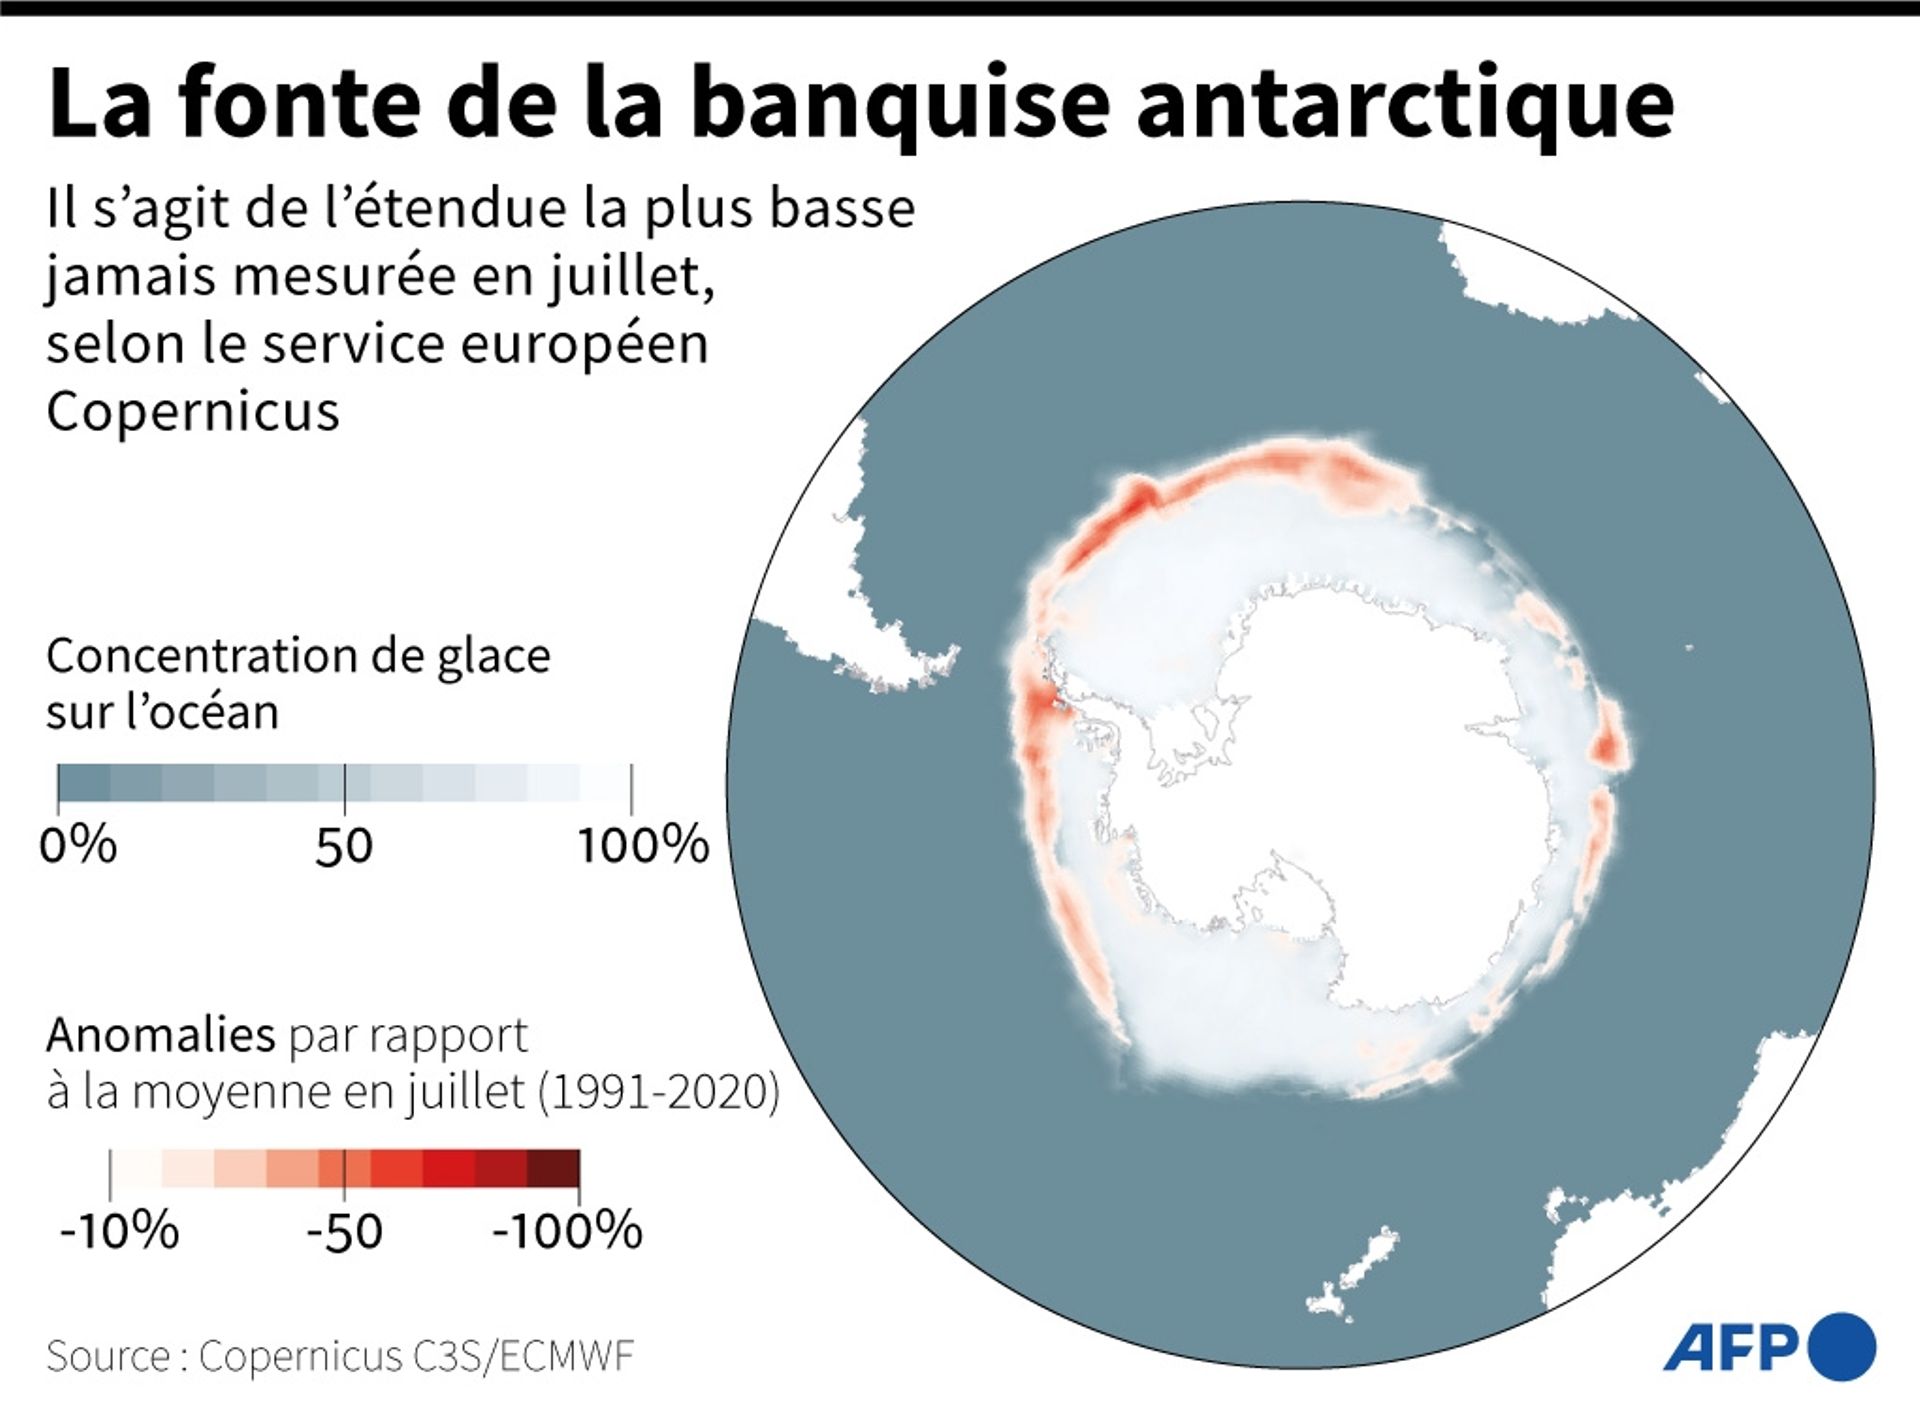 Etendue de la banquise antarctique mesurée en juillet 2022, et anomalies par rapport à la moyenne en juillet (1991-2020)